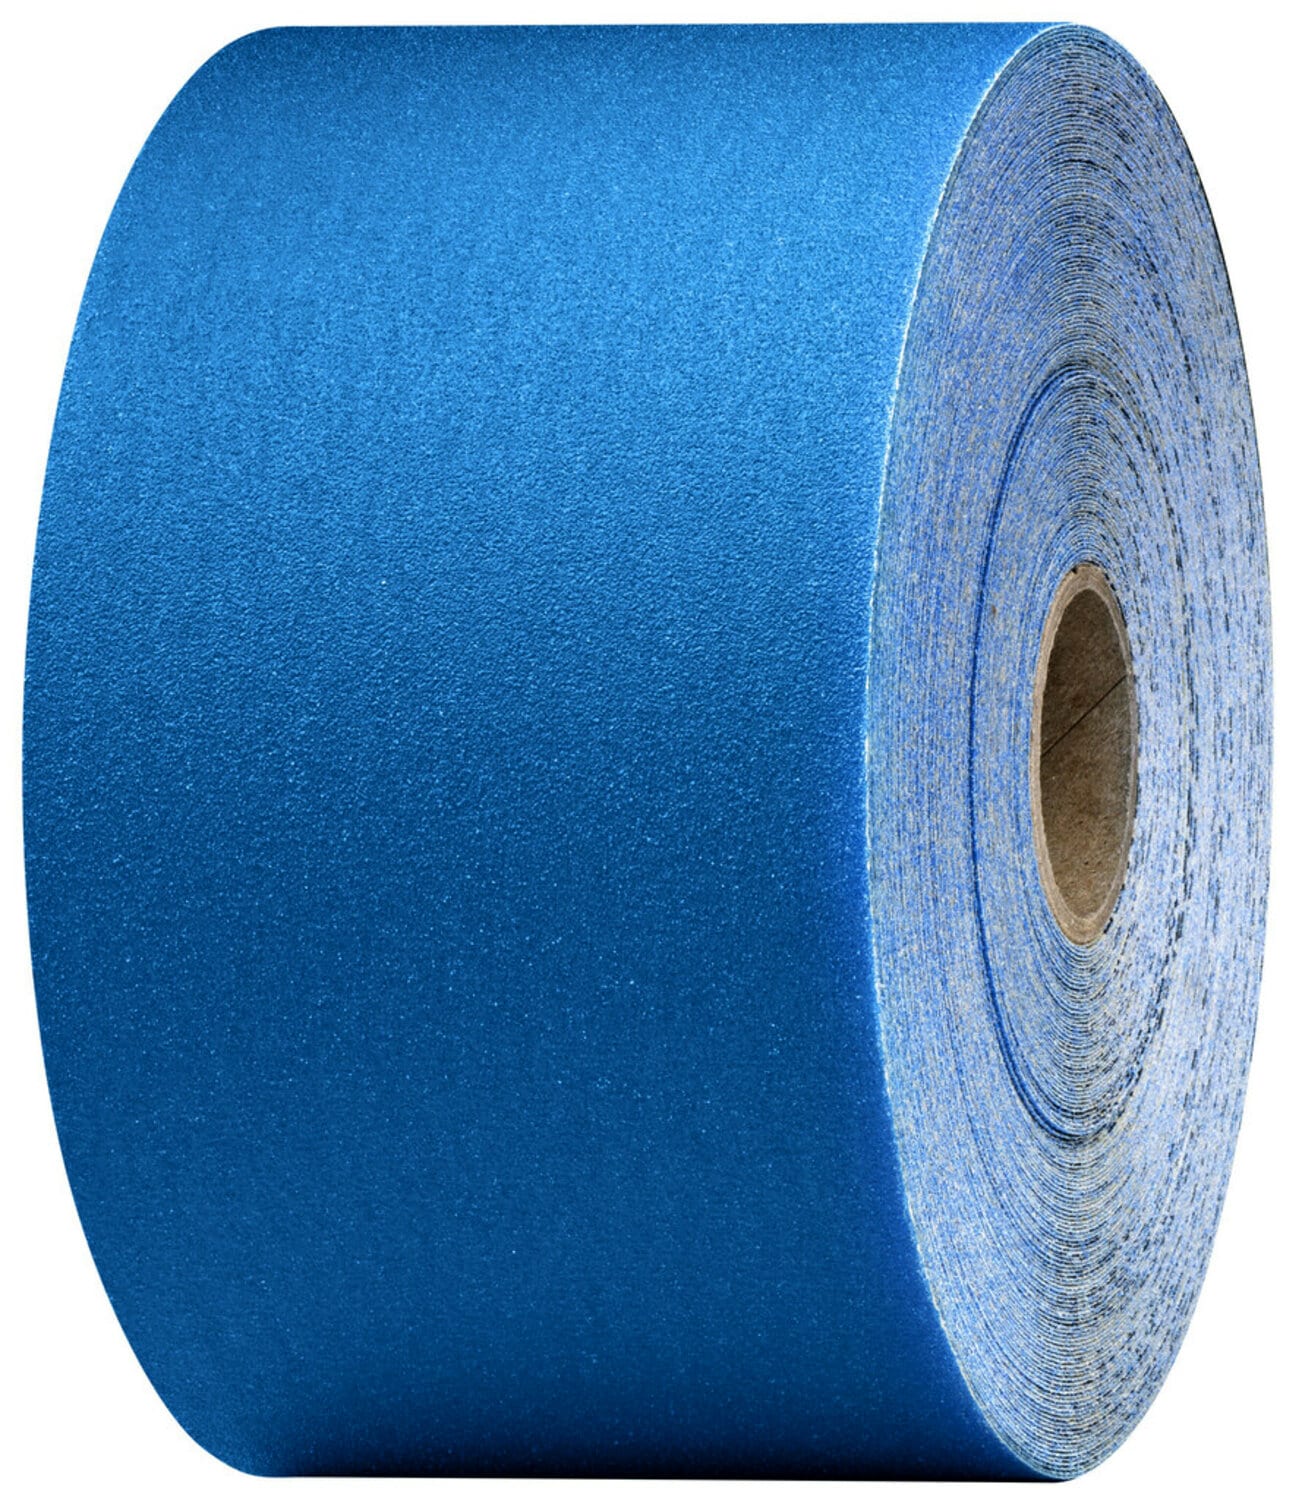 7100098216 - 3M Stikit Blue Abrasive Sheet Roll, 36227, 500, 2-3/4 in x 45 yd, 5
rolls per case